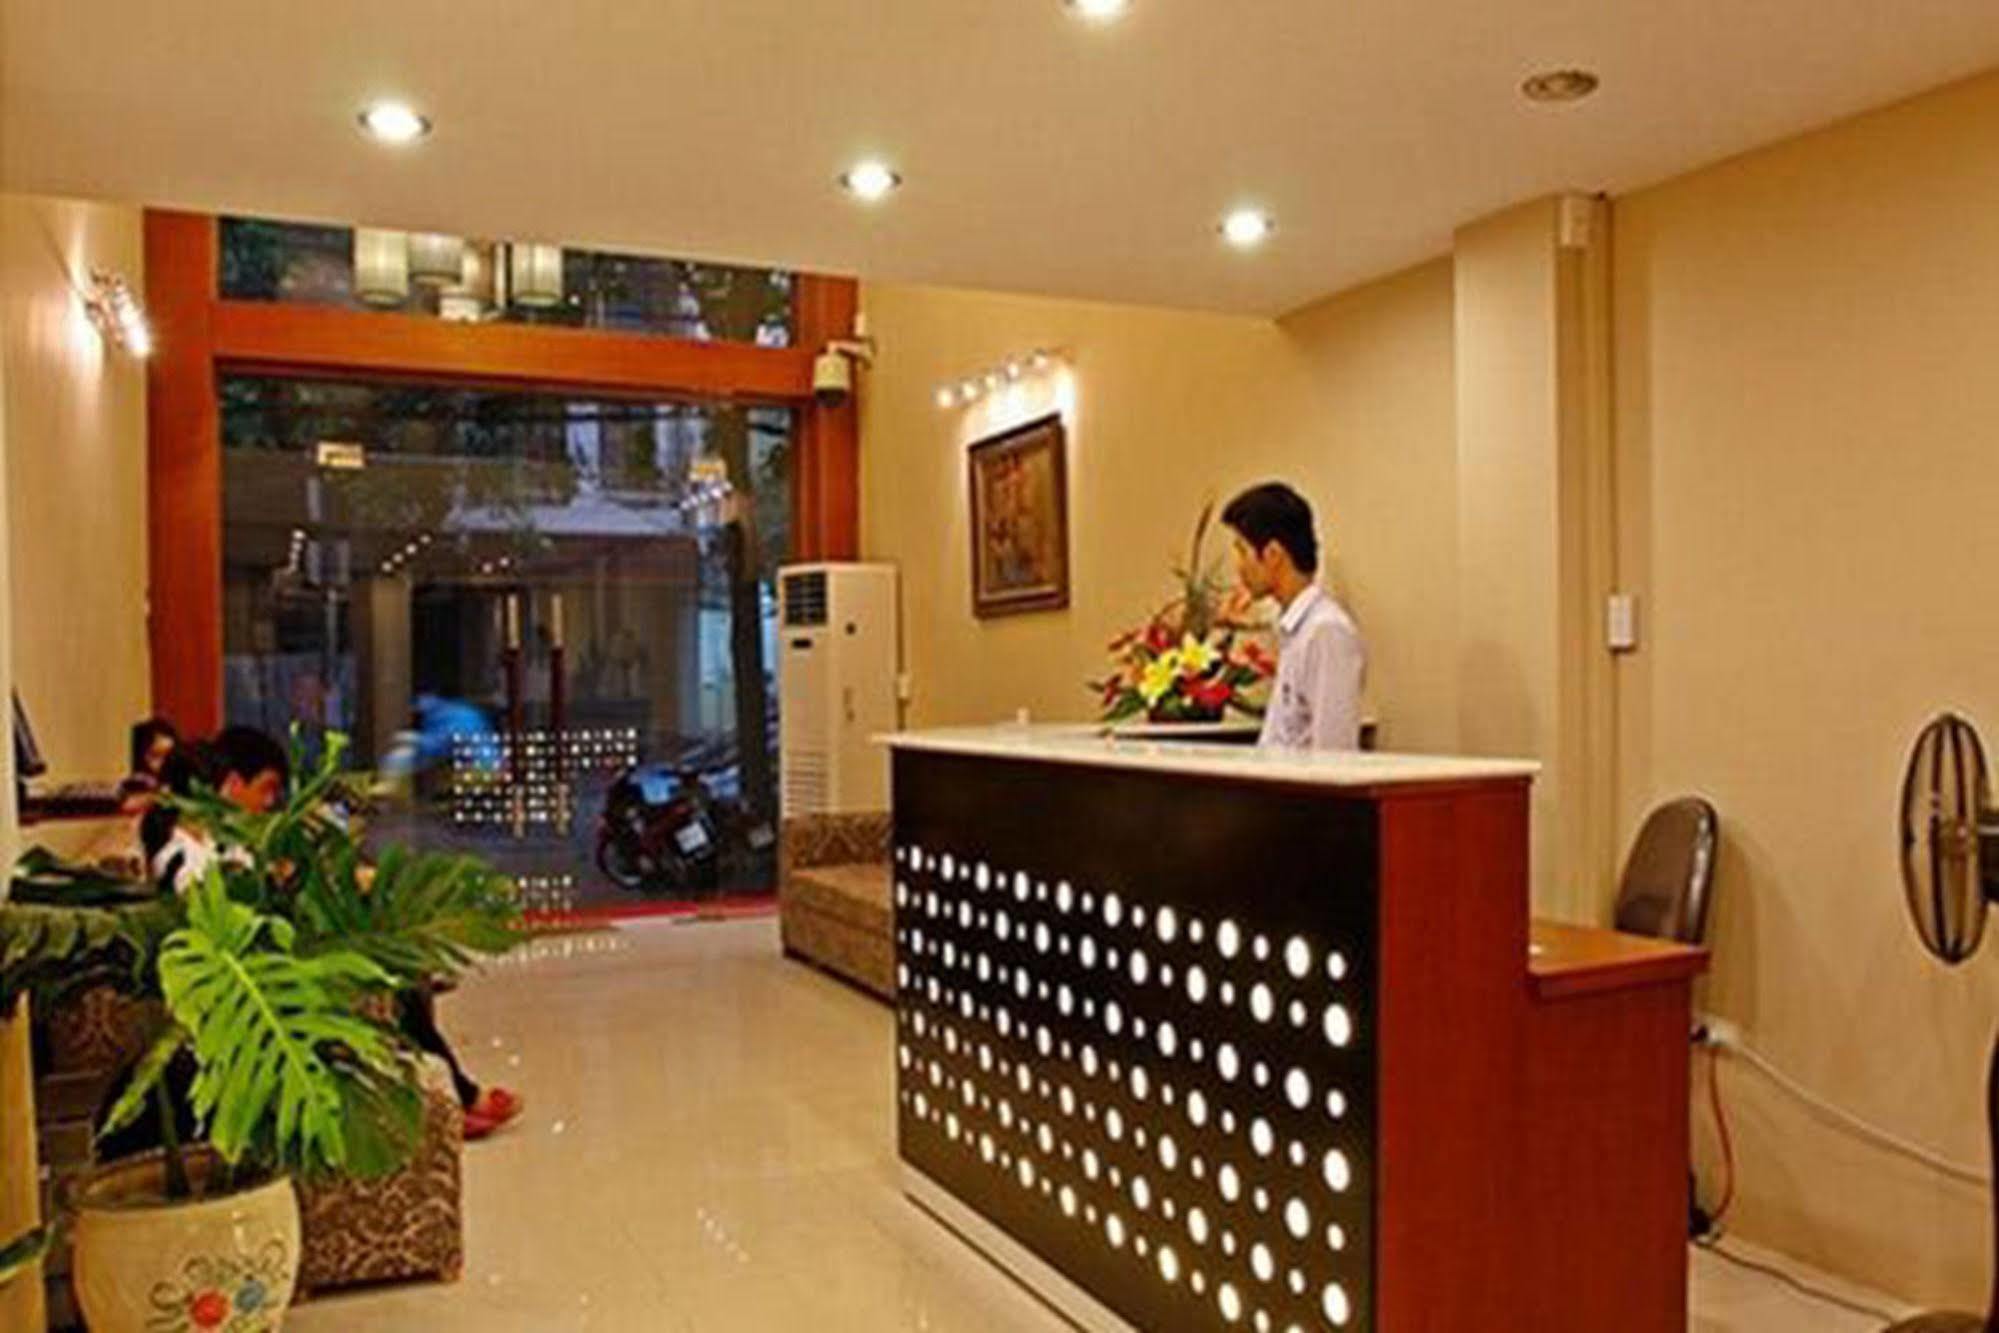 A25 호텔 - 53 튜 틴 하노이 외부 사진